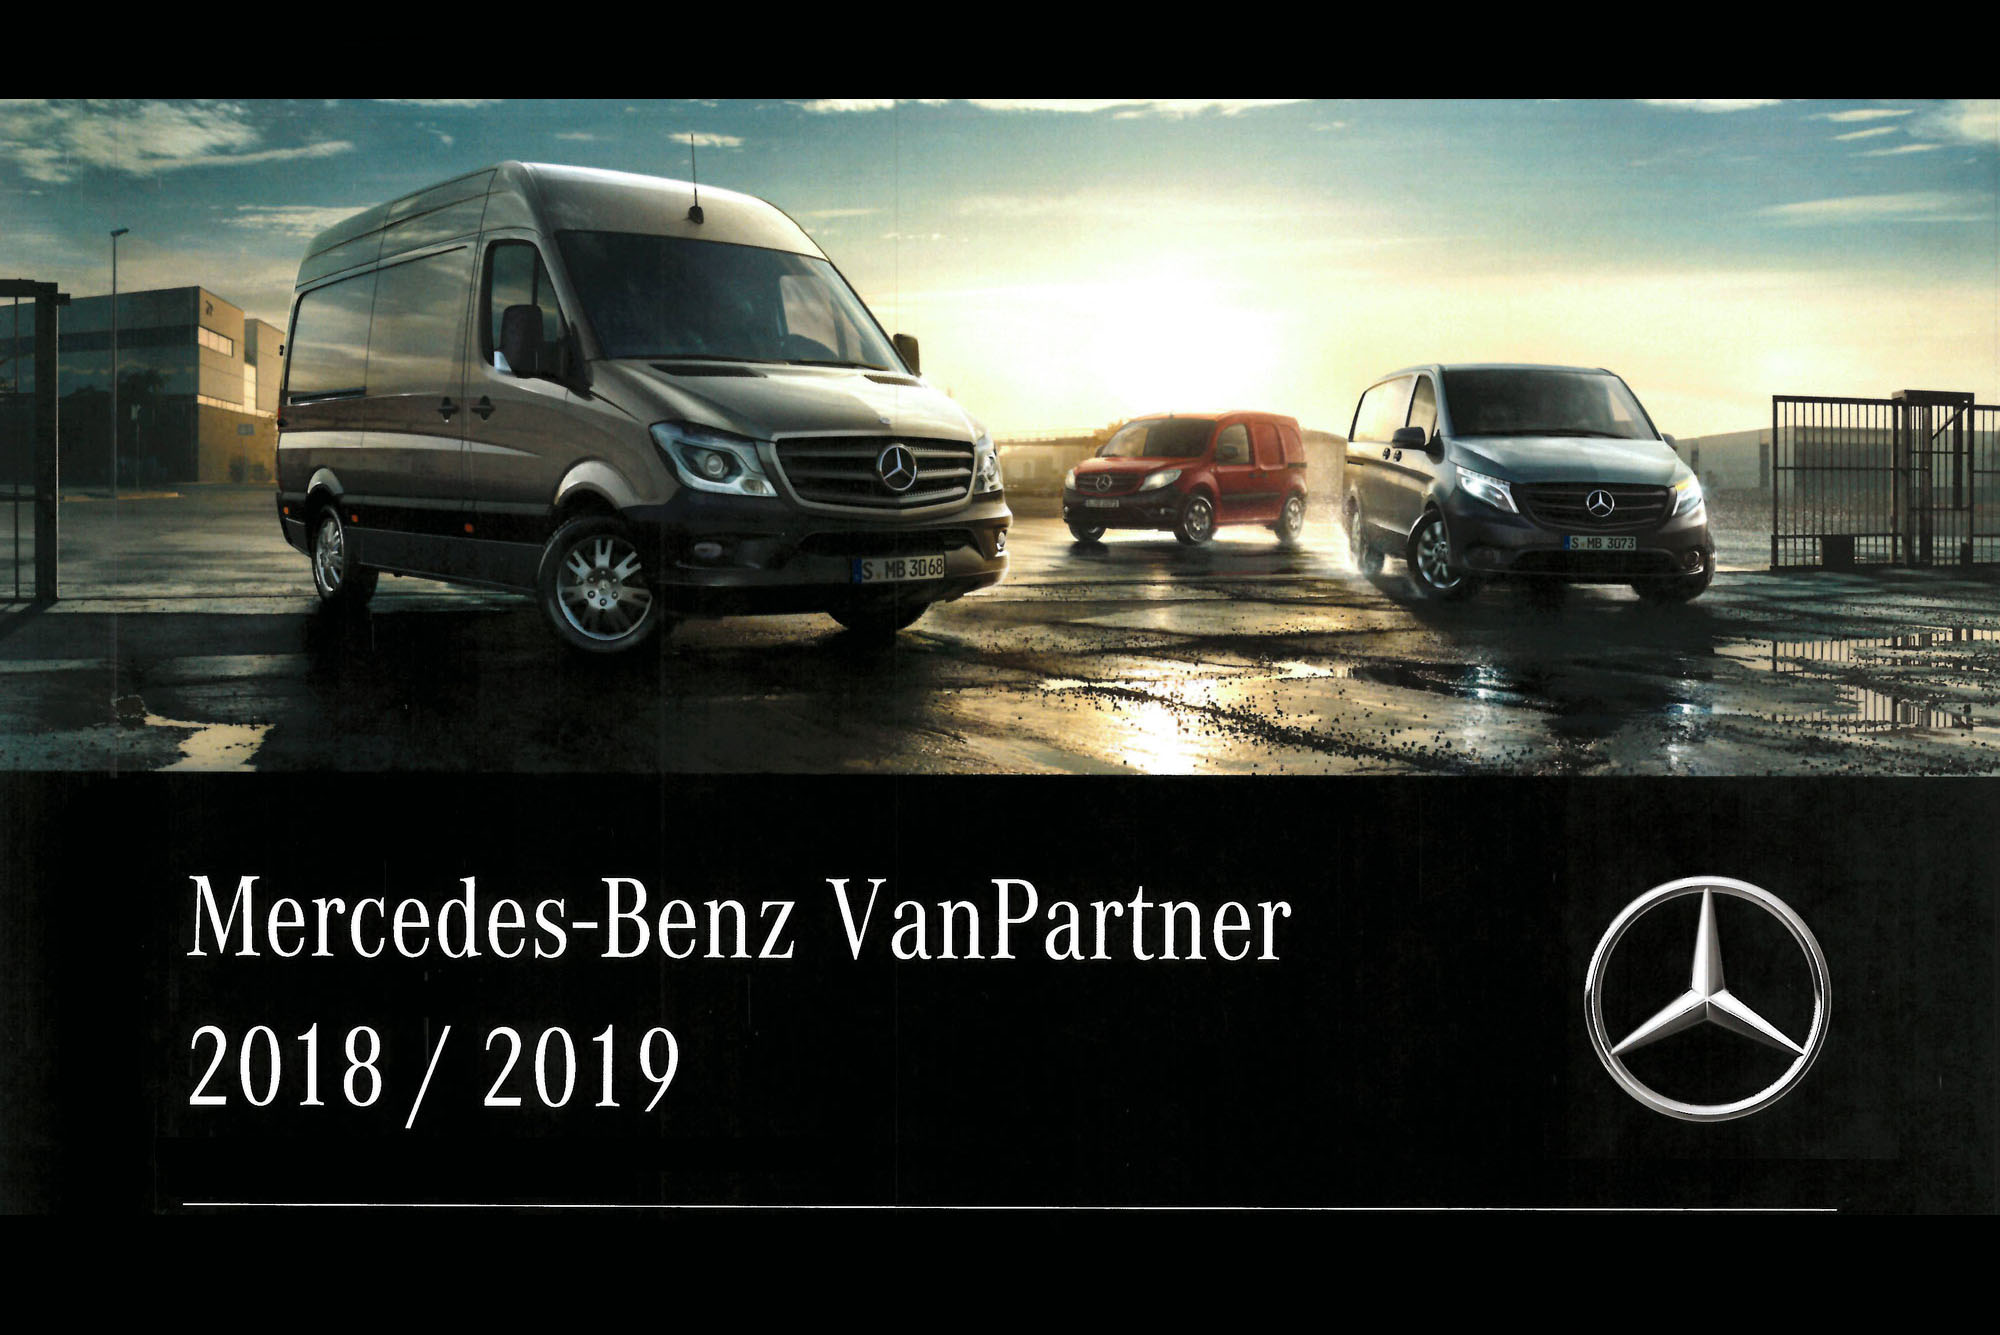 Modul-System erhåller förnyat internationellt Van Partner Certifikat från Mercedes Benz